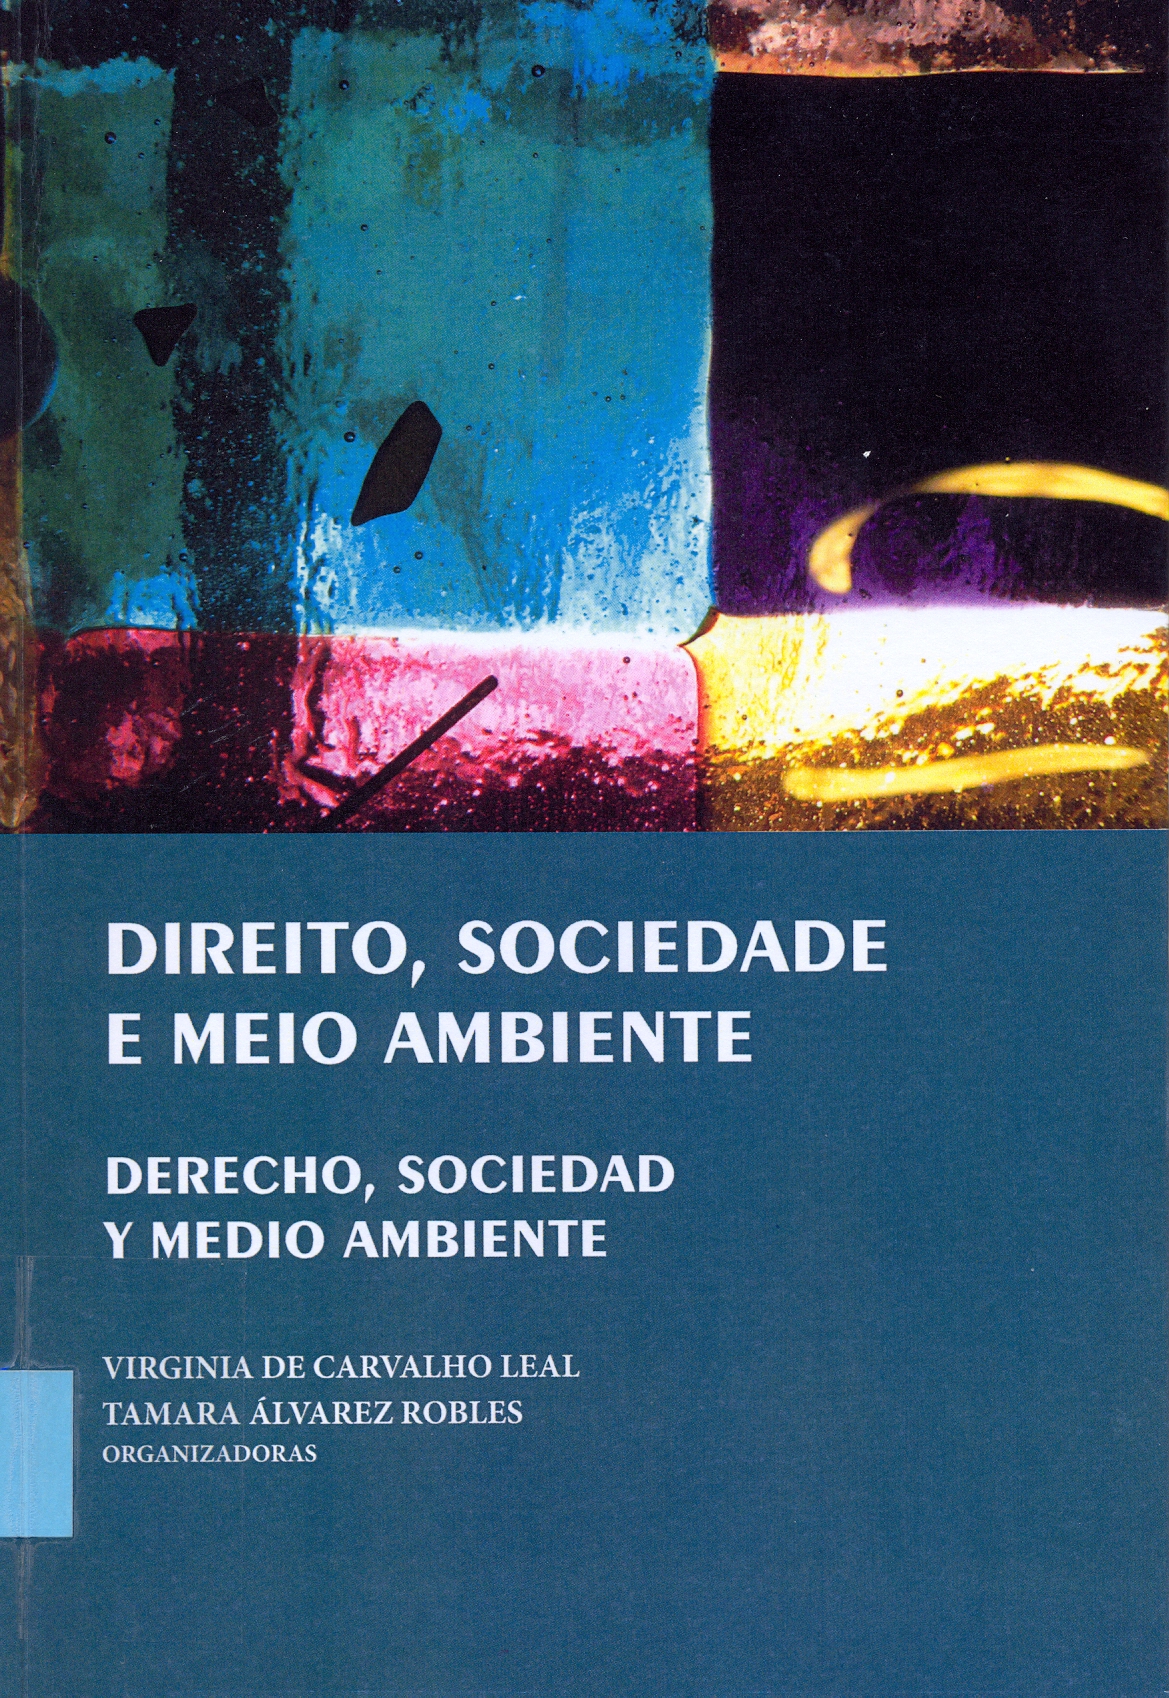 Imagen de portada del libro Direito, sociedade e meio ambiente